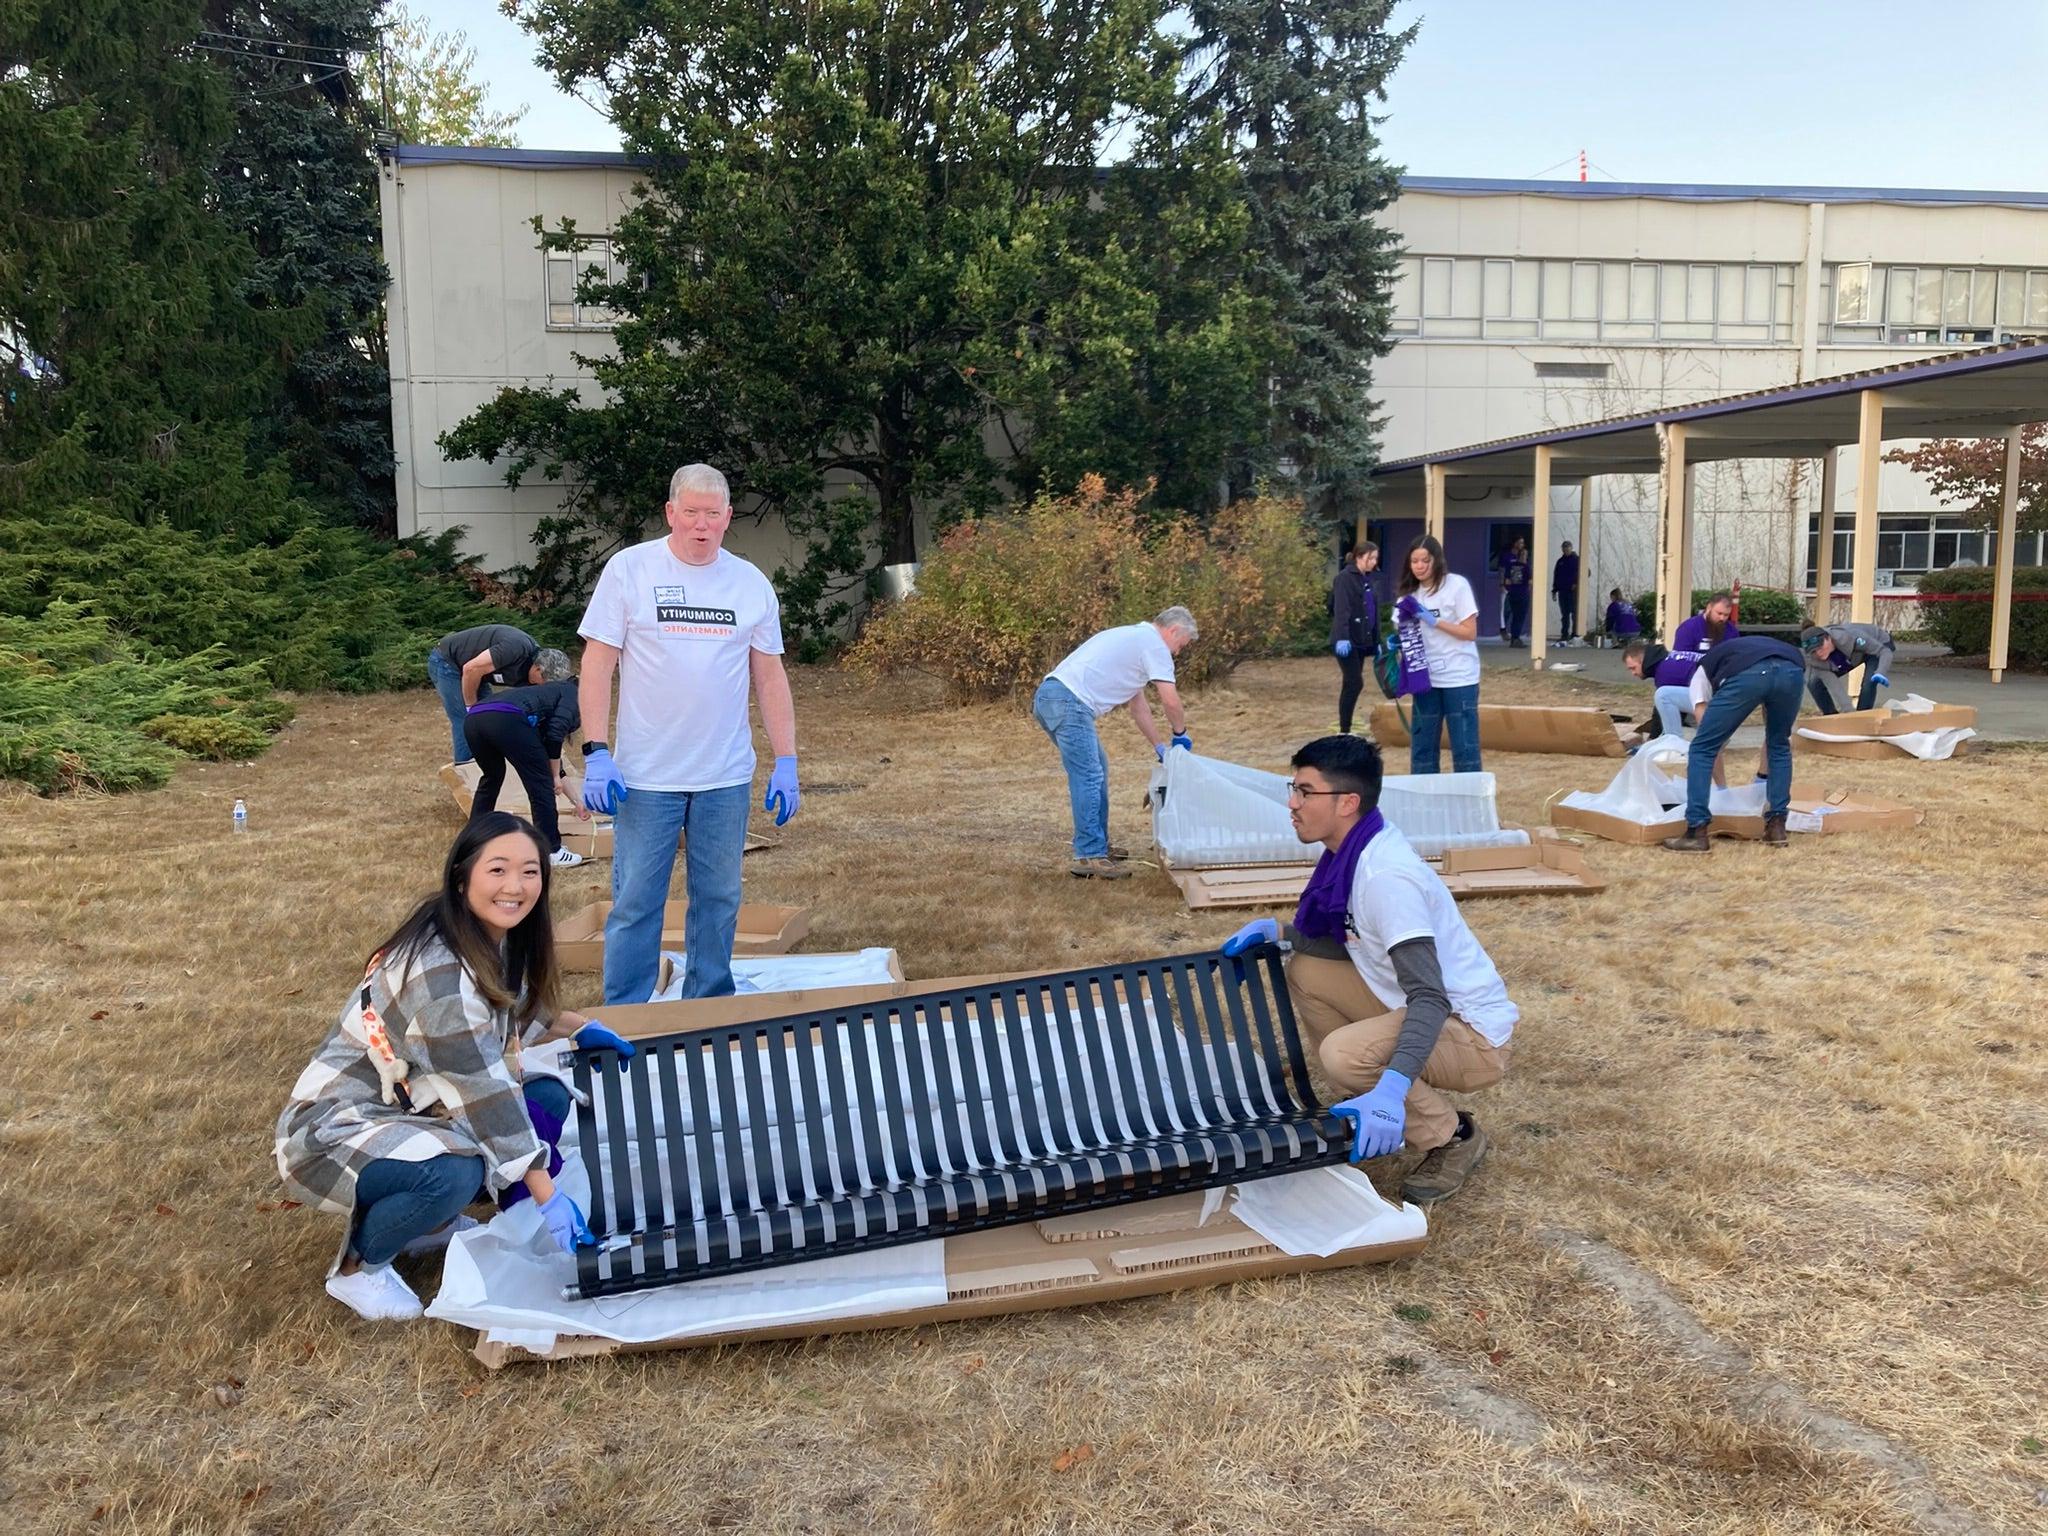 NAIOP志愿者在华盛顿中学搭建长凳